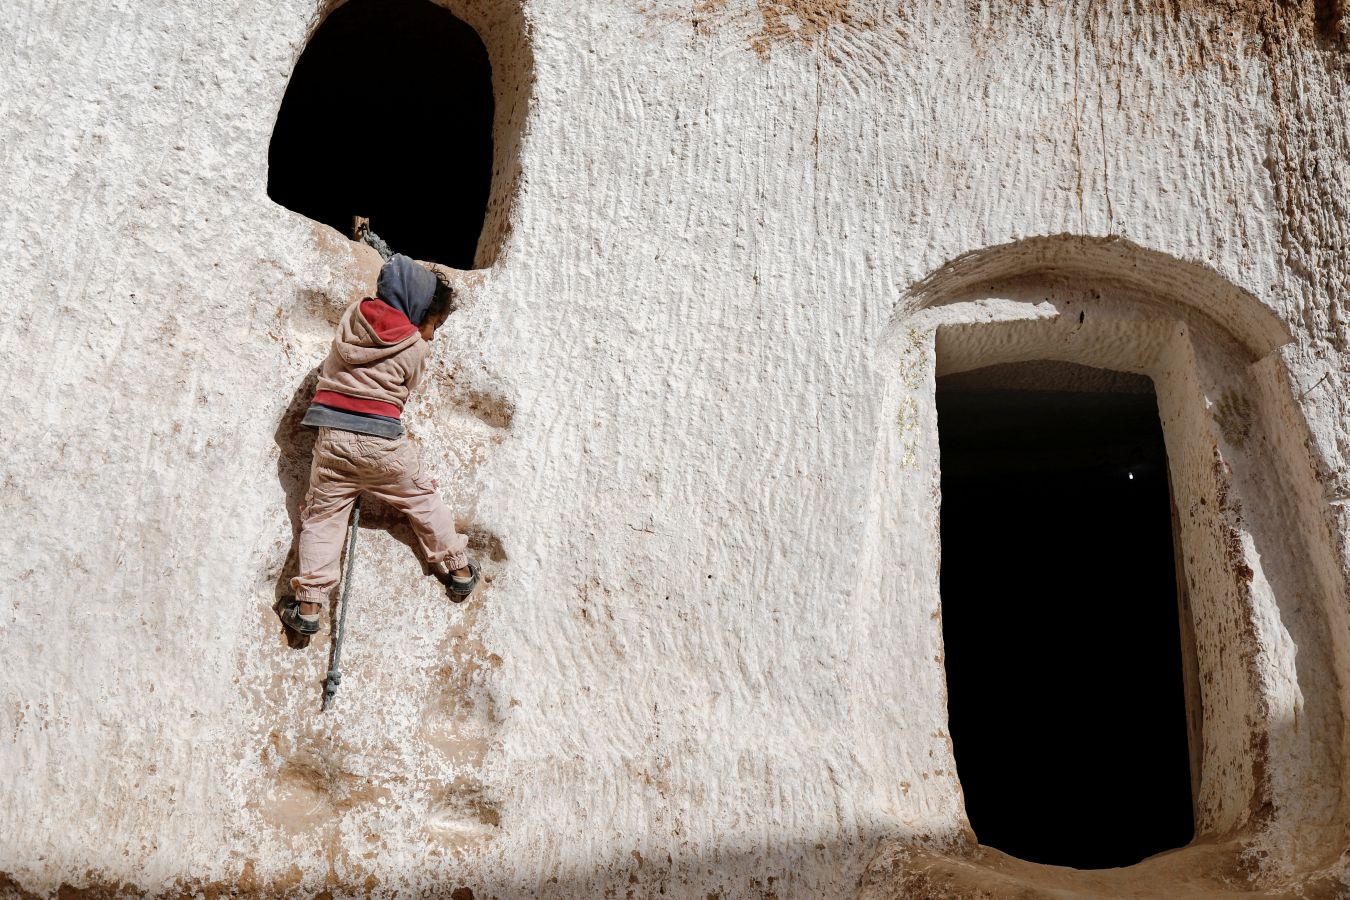 En las afueras de Matmata en Túnez varias familias defienden su hogar tradicional. Son casas construidas excavando en la montaña y un gran reclamo turístico de la zona